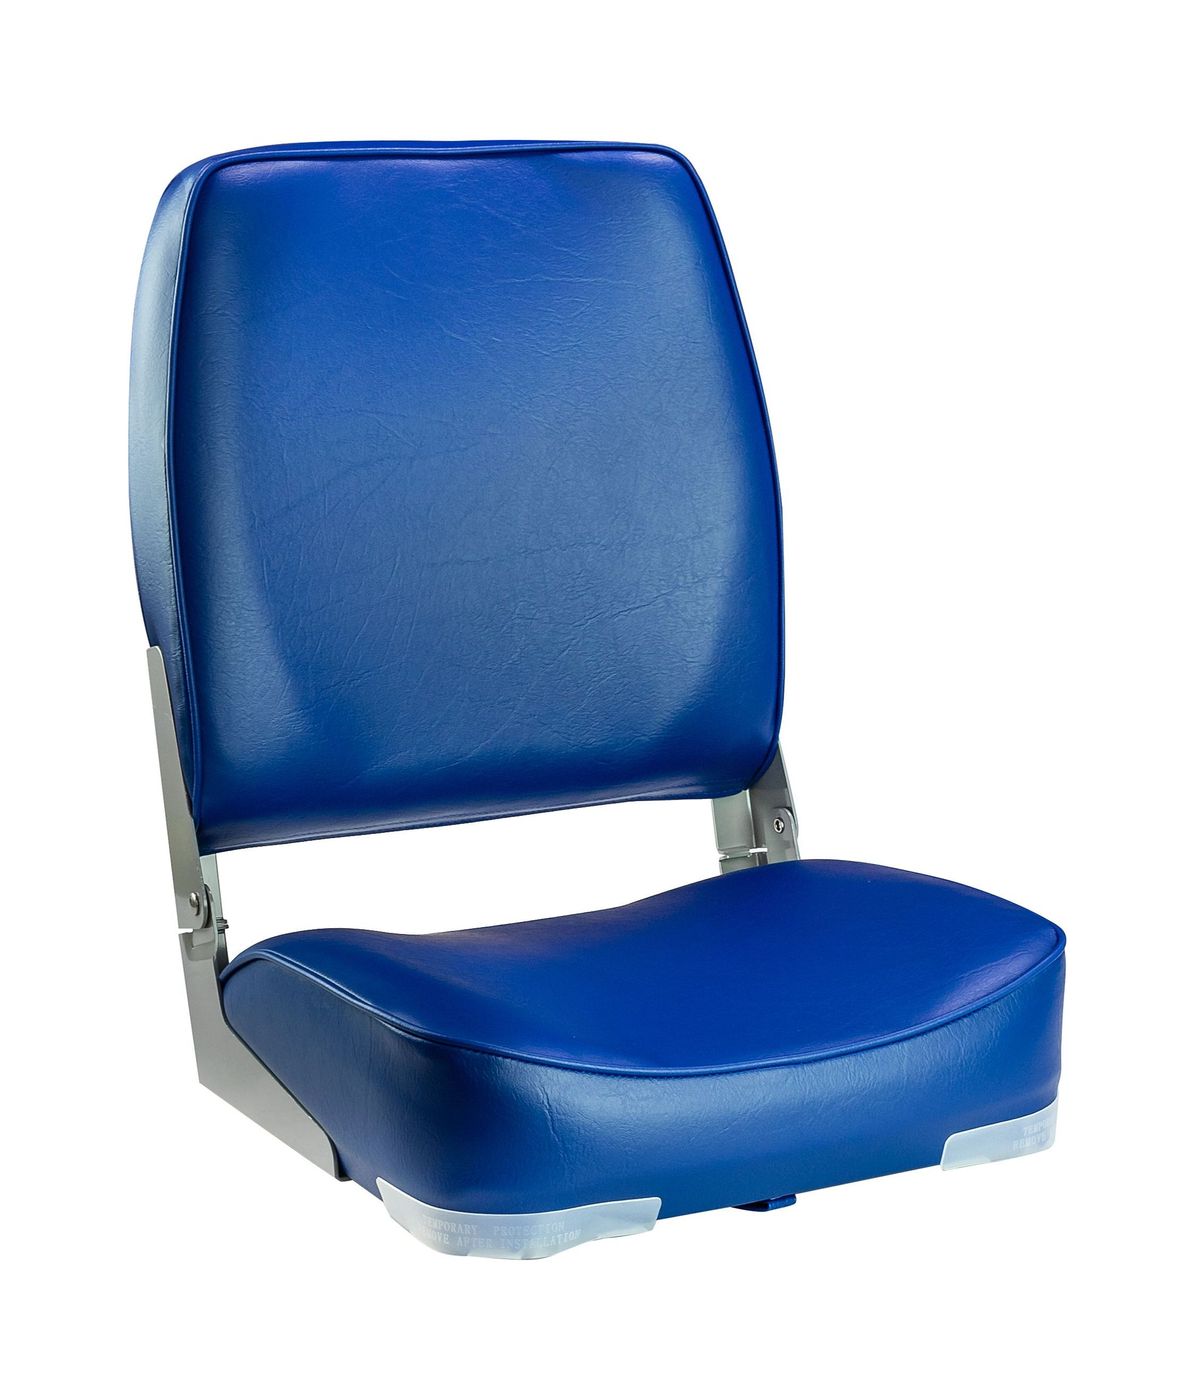 Кресло мягкое складное, высокая спинка, обивка винил, цвет синий, Marine Rocket 75127B-MR кресло мягкое складное высокая спинка камуфляж камыш marine rocket 75127camo99 mr